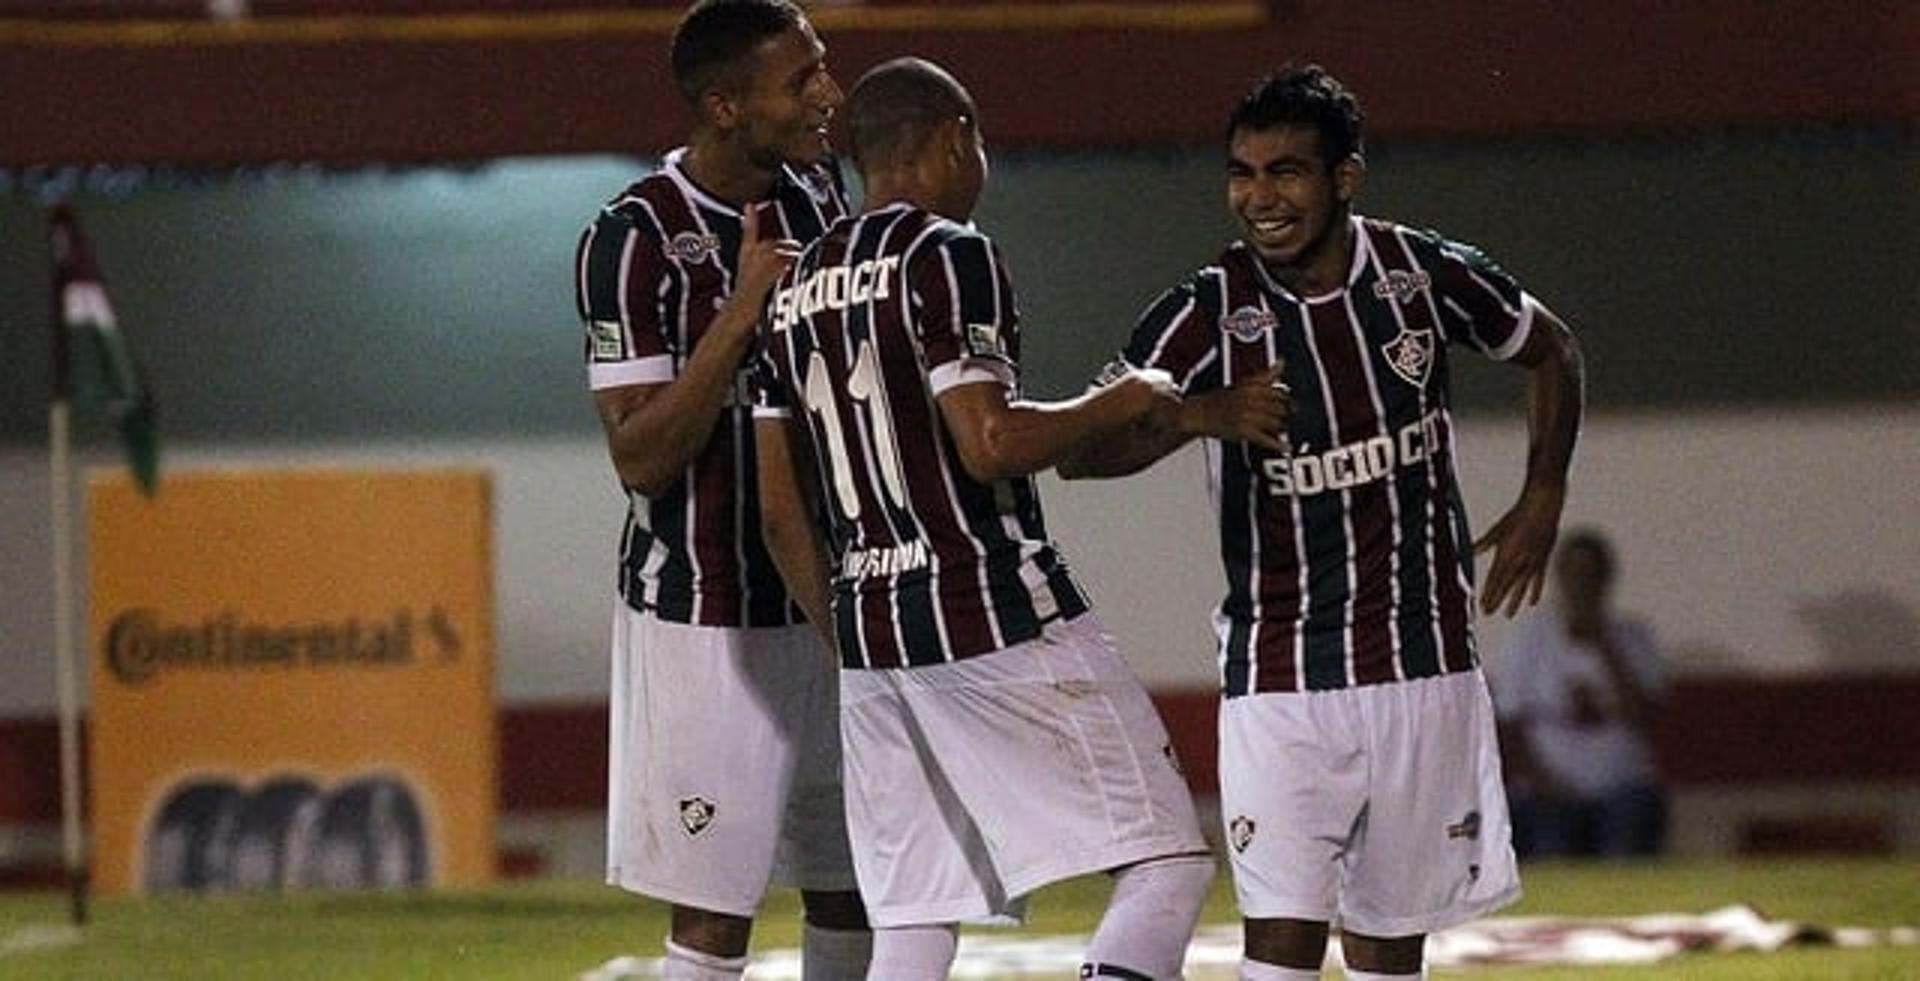 Sornoza, Richarlison e Wellington Silva (Foto: Nelson Perez/Fluminense F.C.)